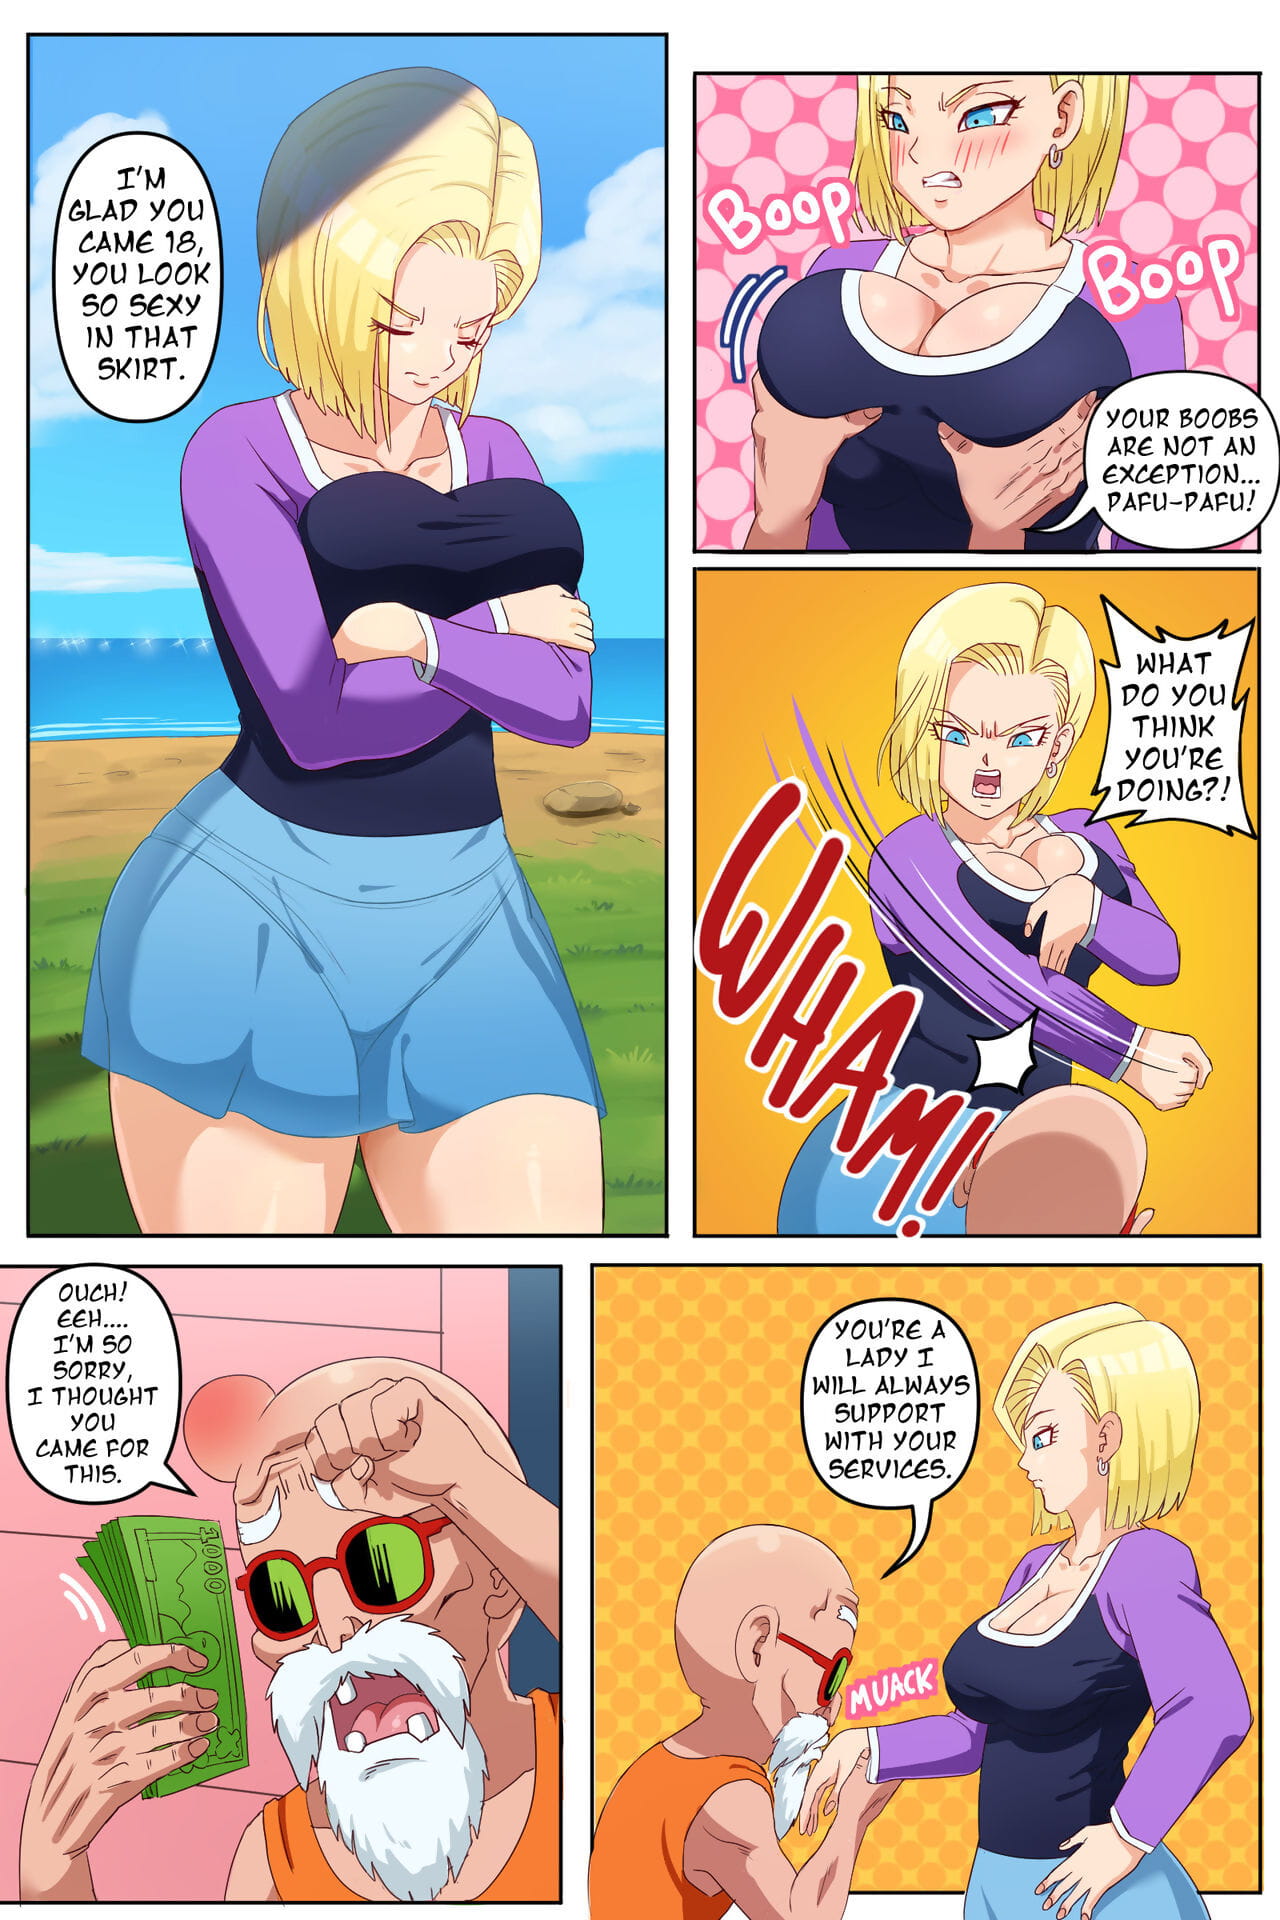 ドラゴンボール スーパー pinkpawg – android 18 ntr – ep 1 page 1